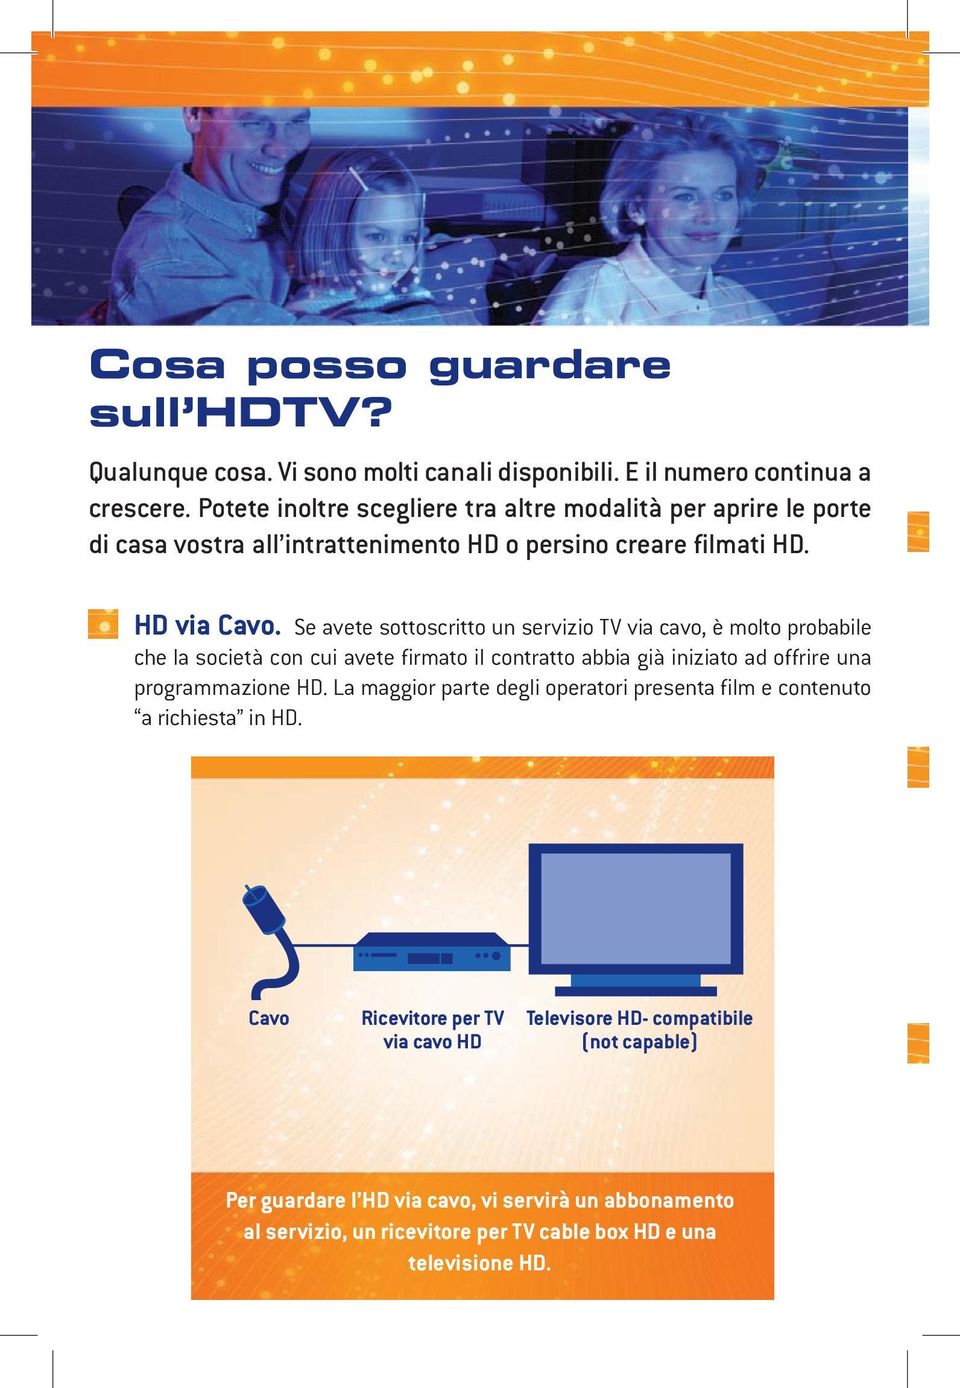 Se avete sottoscritto un servizio TV via cavo, è molto probabile che la società con cui avete firmato il contratto abbia già iniziato ad offrire una programmazione HD.